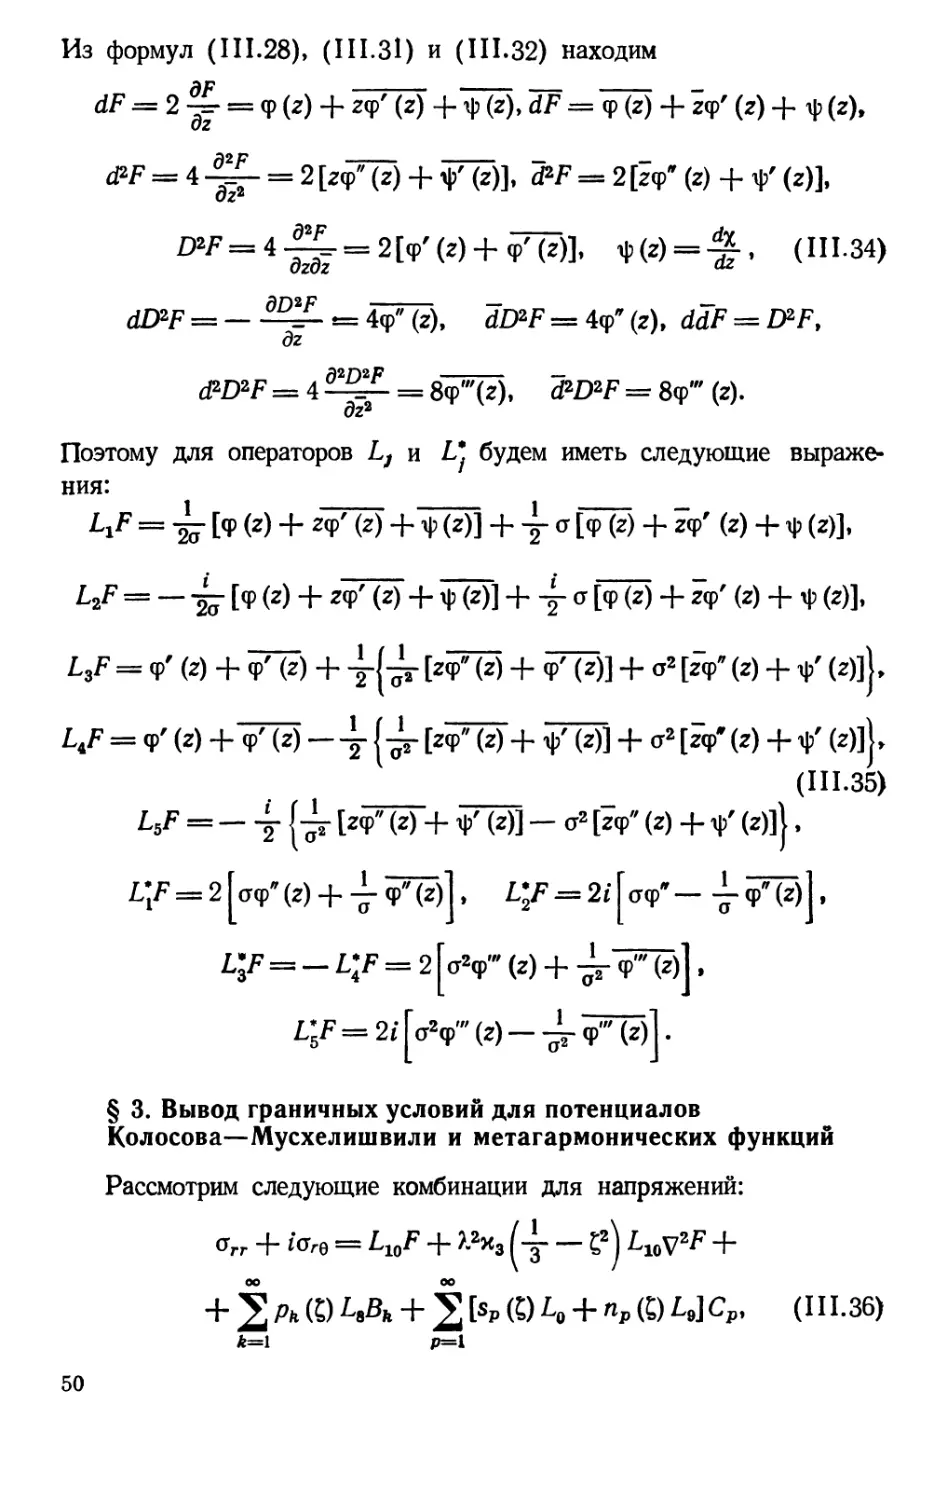 § 3. Вывод граничных условий для потенциалов Колосова–Мусхелишвили и метагармонических функций